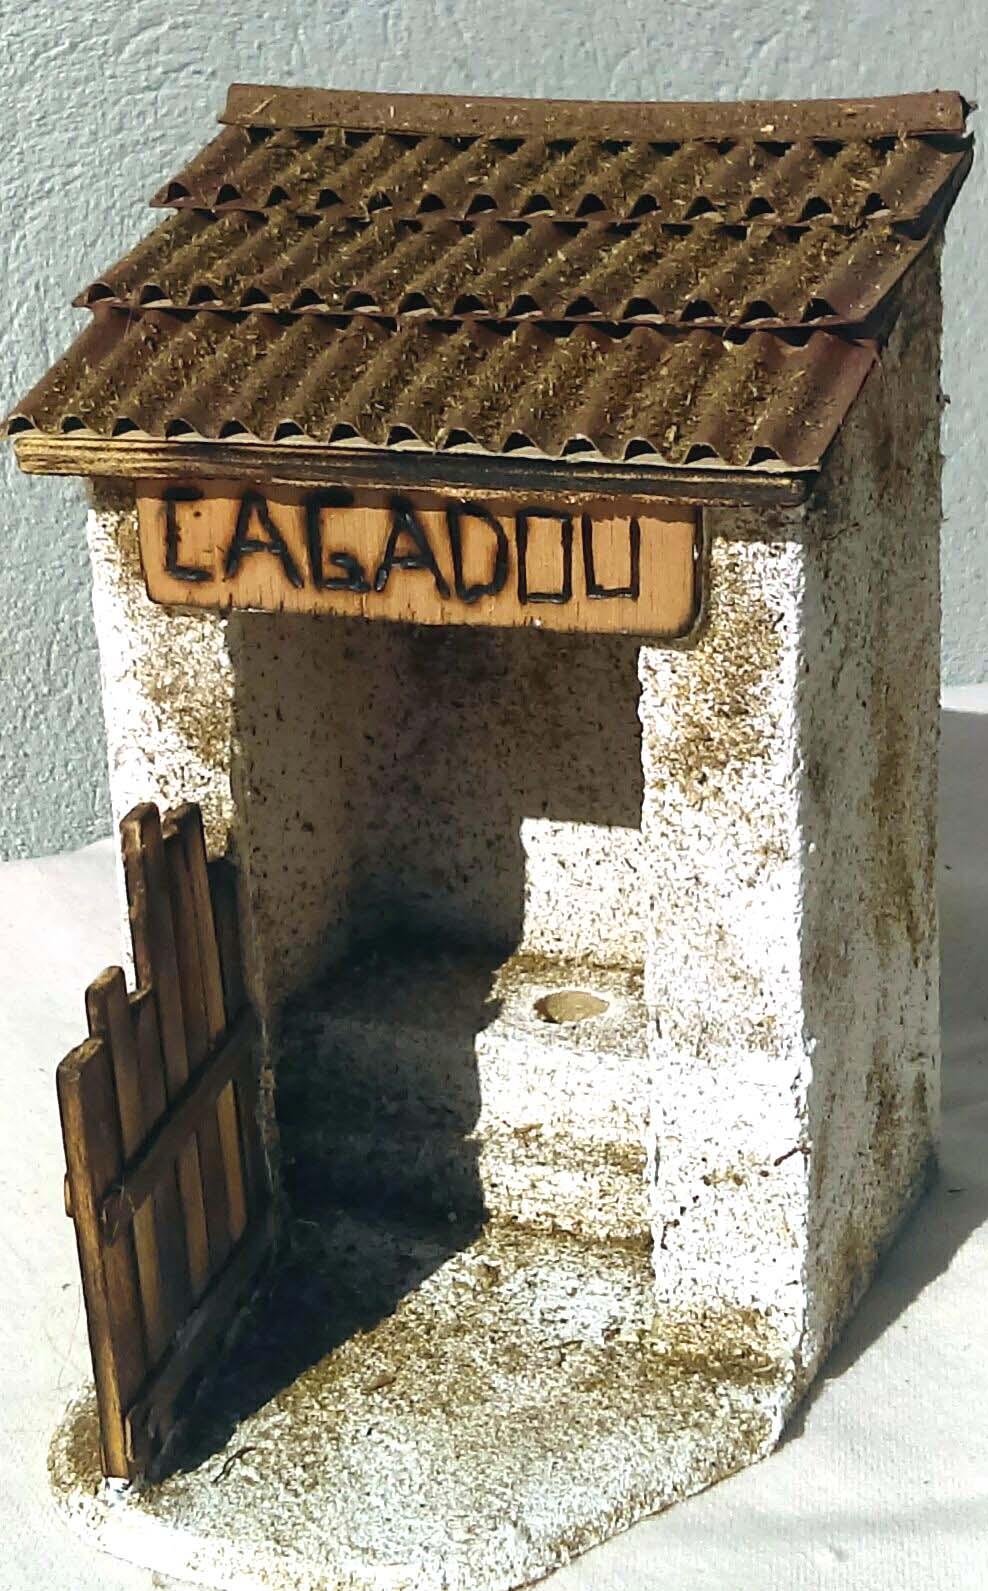 Caguadou